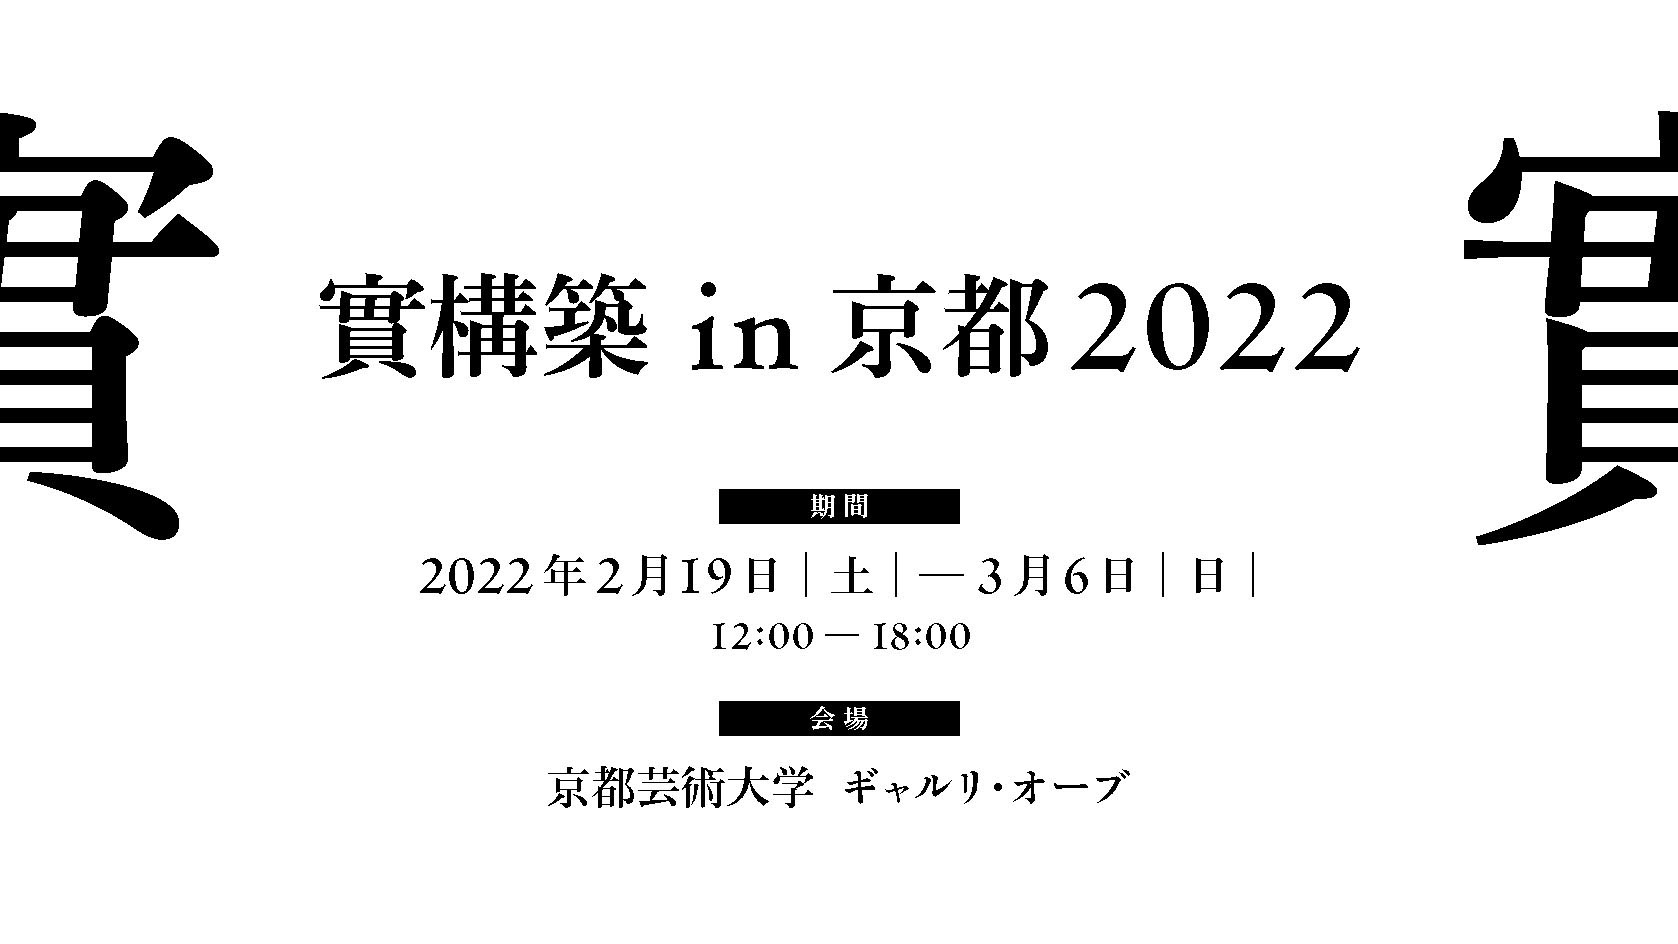 實構築IN京都2022 現已開展即刻登記參觀！